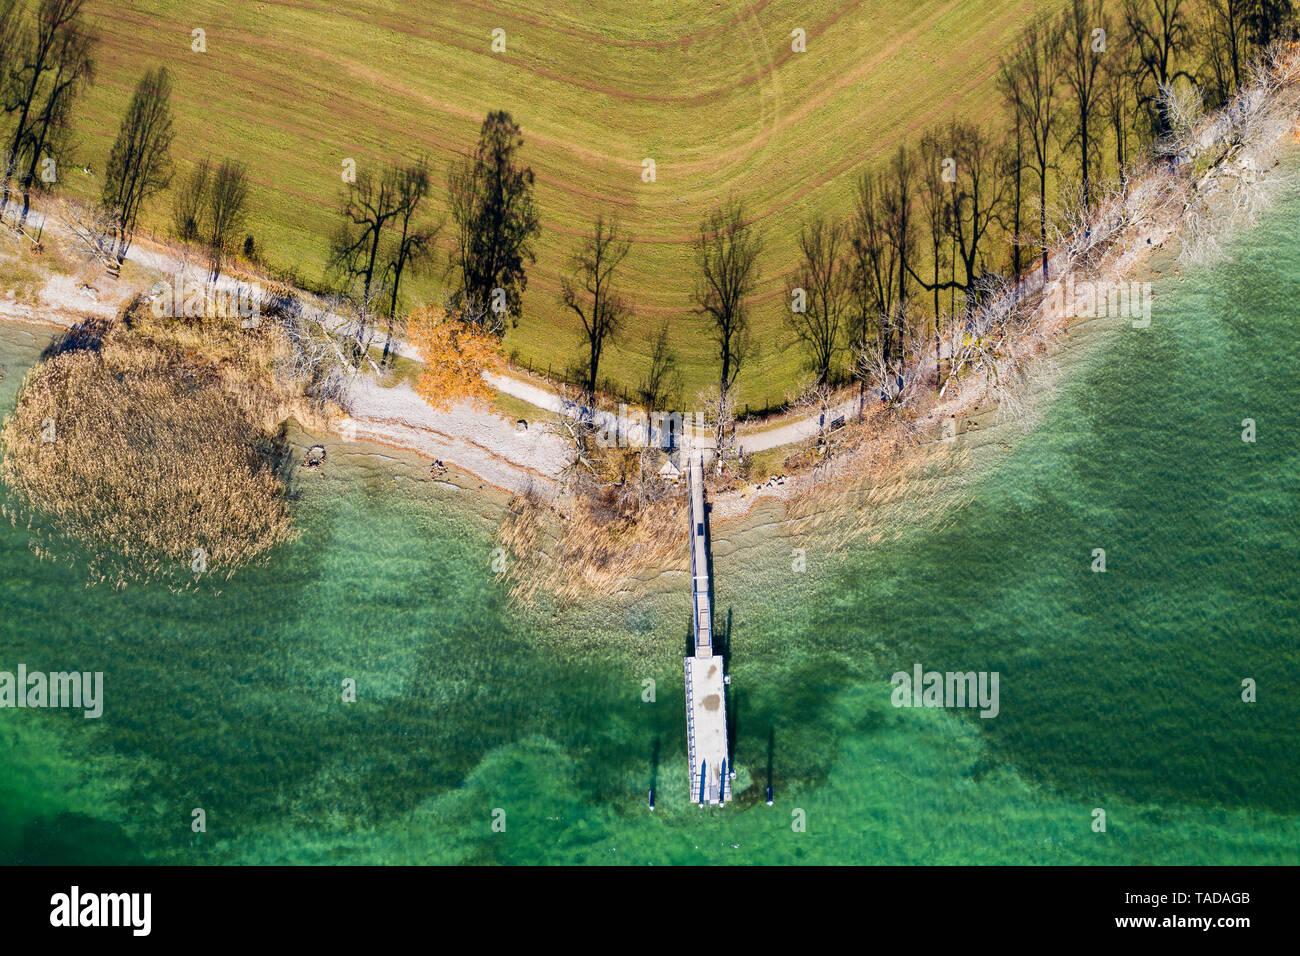 Alemania, Baviera, Kaltenbrunn, Tegernsee, las sombras de los árboles en las orillas del lago y embarcadero, vista aérea Foto de stock